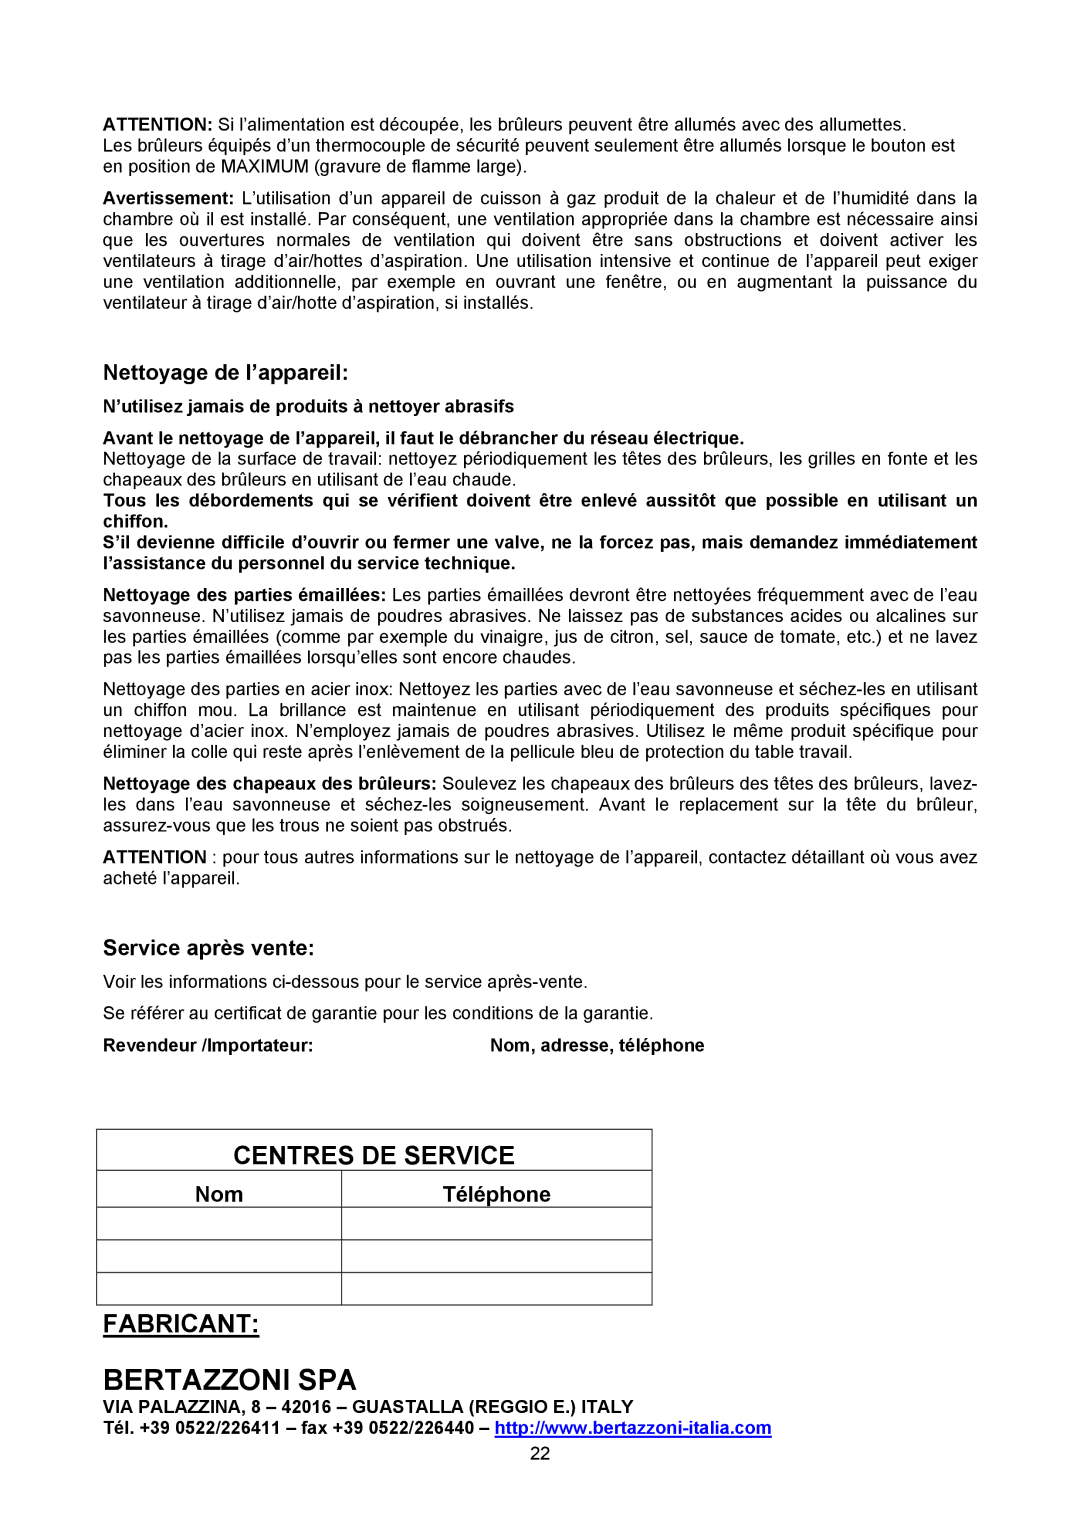 Bertazzoni P24 4 00 X manual Nettoyage de l’appareil, Service après vente, Nom Téléphone 